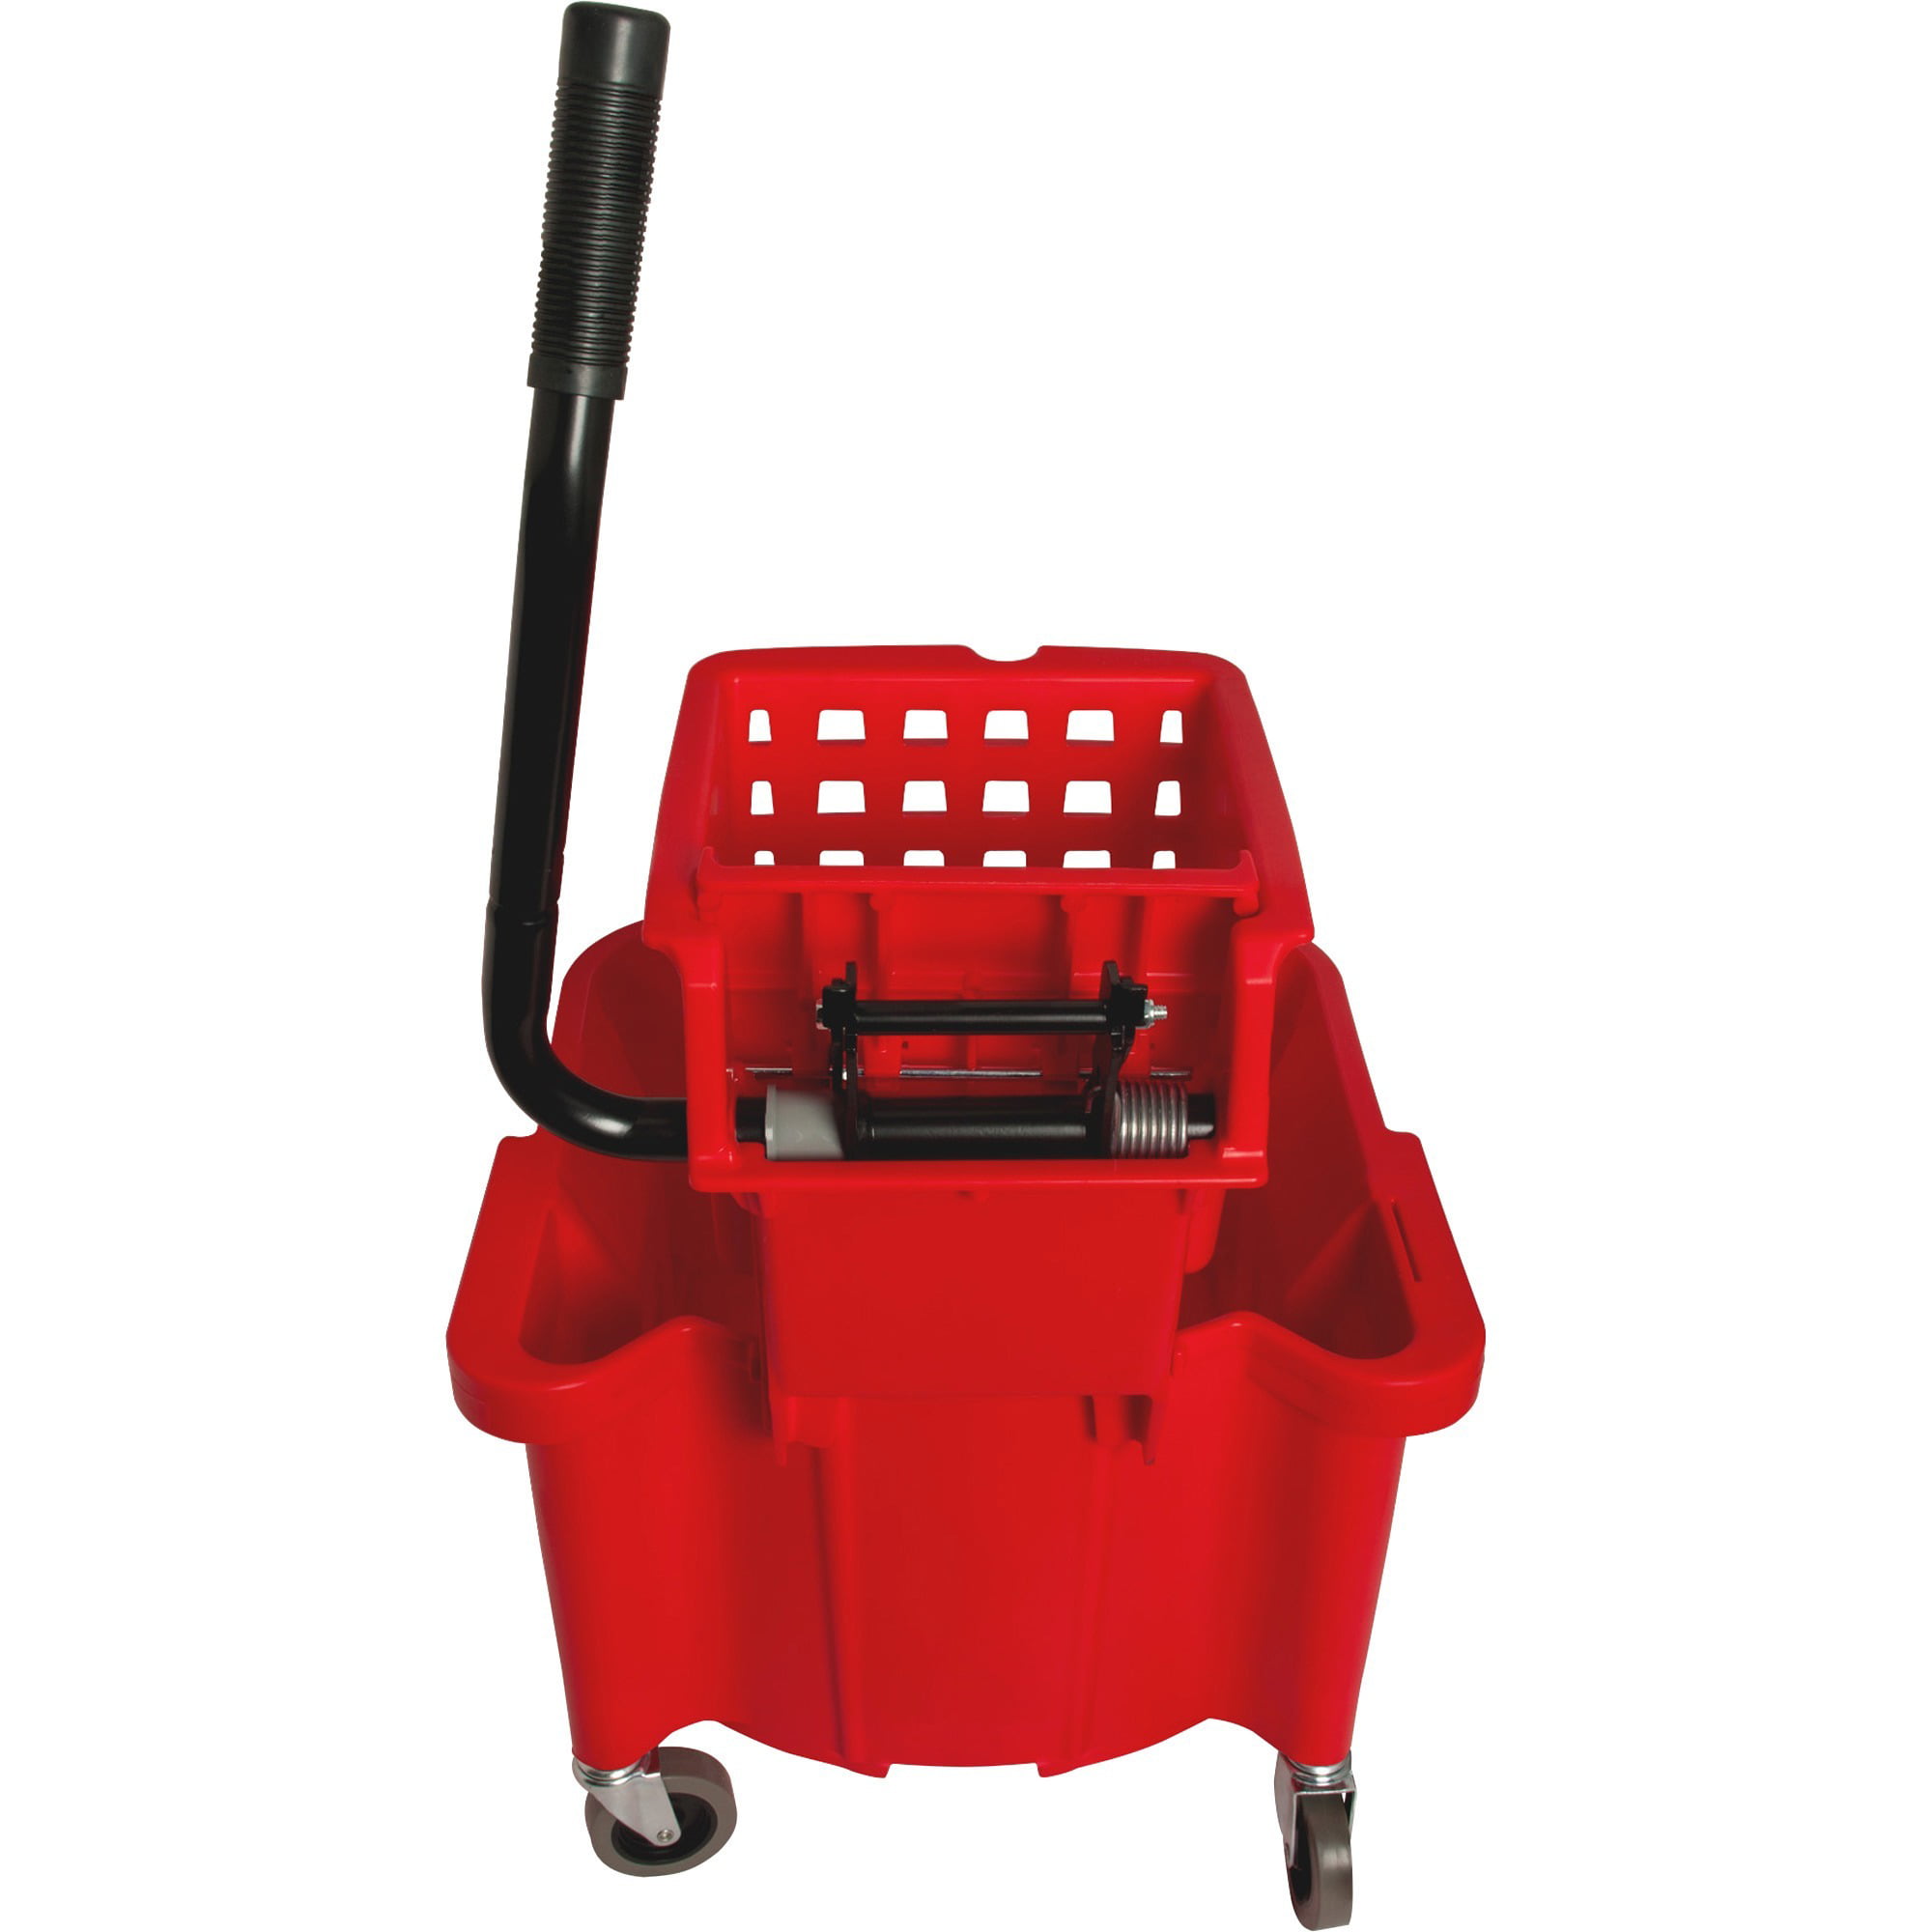 Handle Holder & Mop Head Kentucky Mop Bucket Combo Set Wringer Bucket Red 